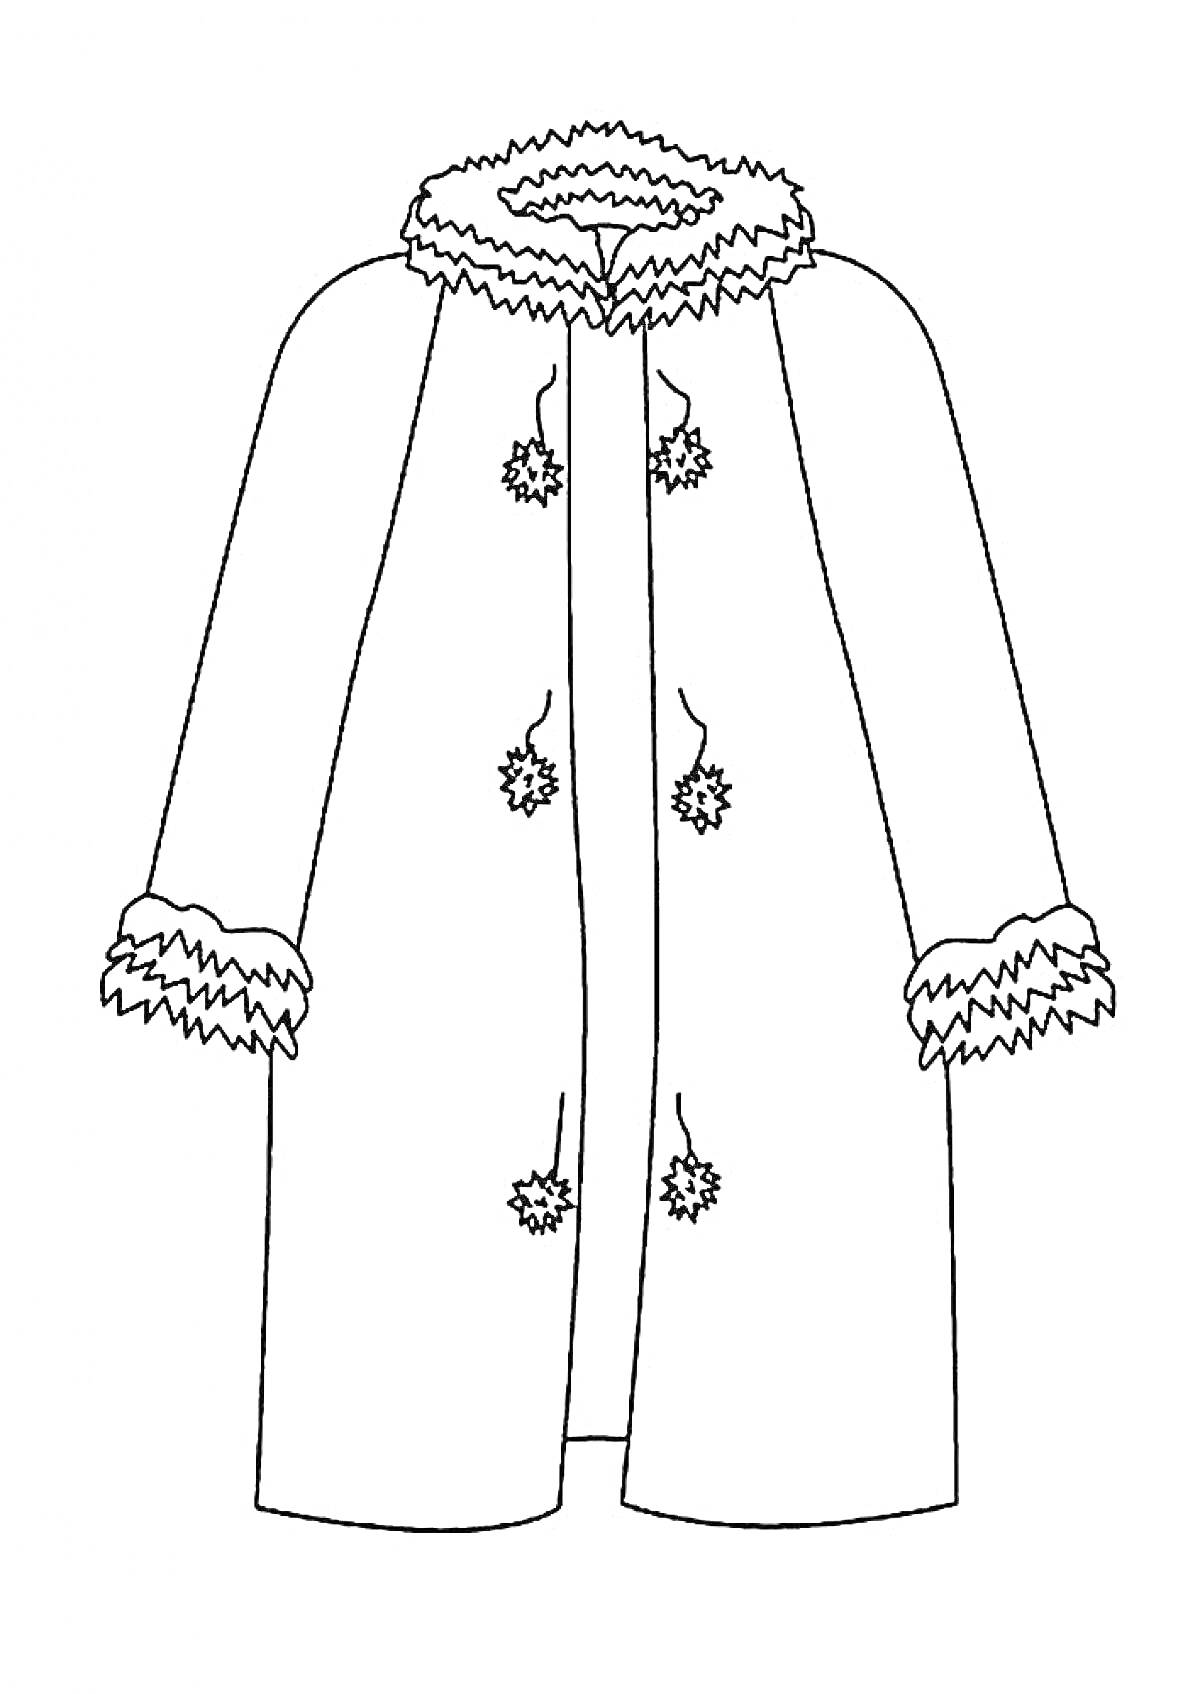 Пальто с отделкой мехом на воротнике, манжетах и пуговицах